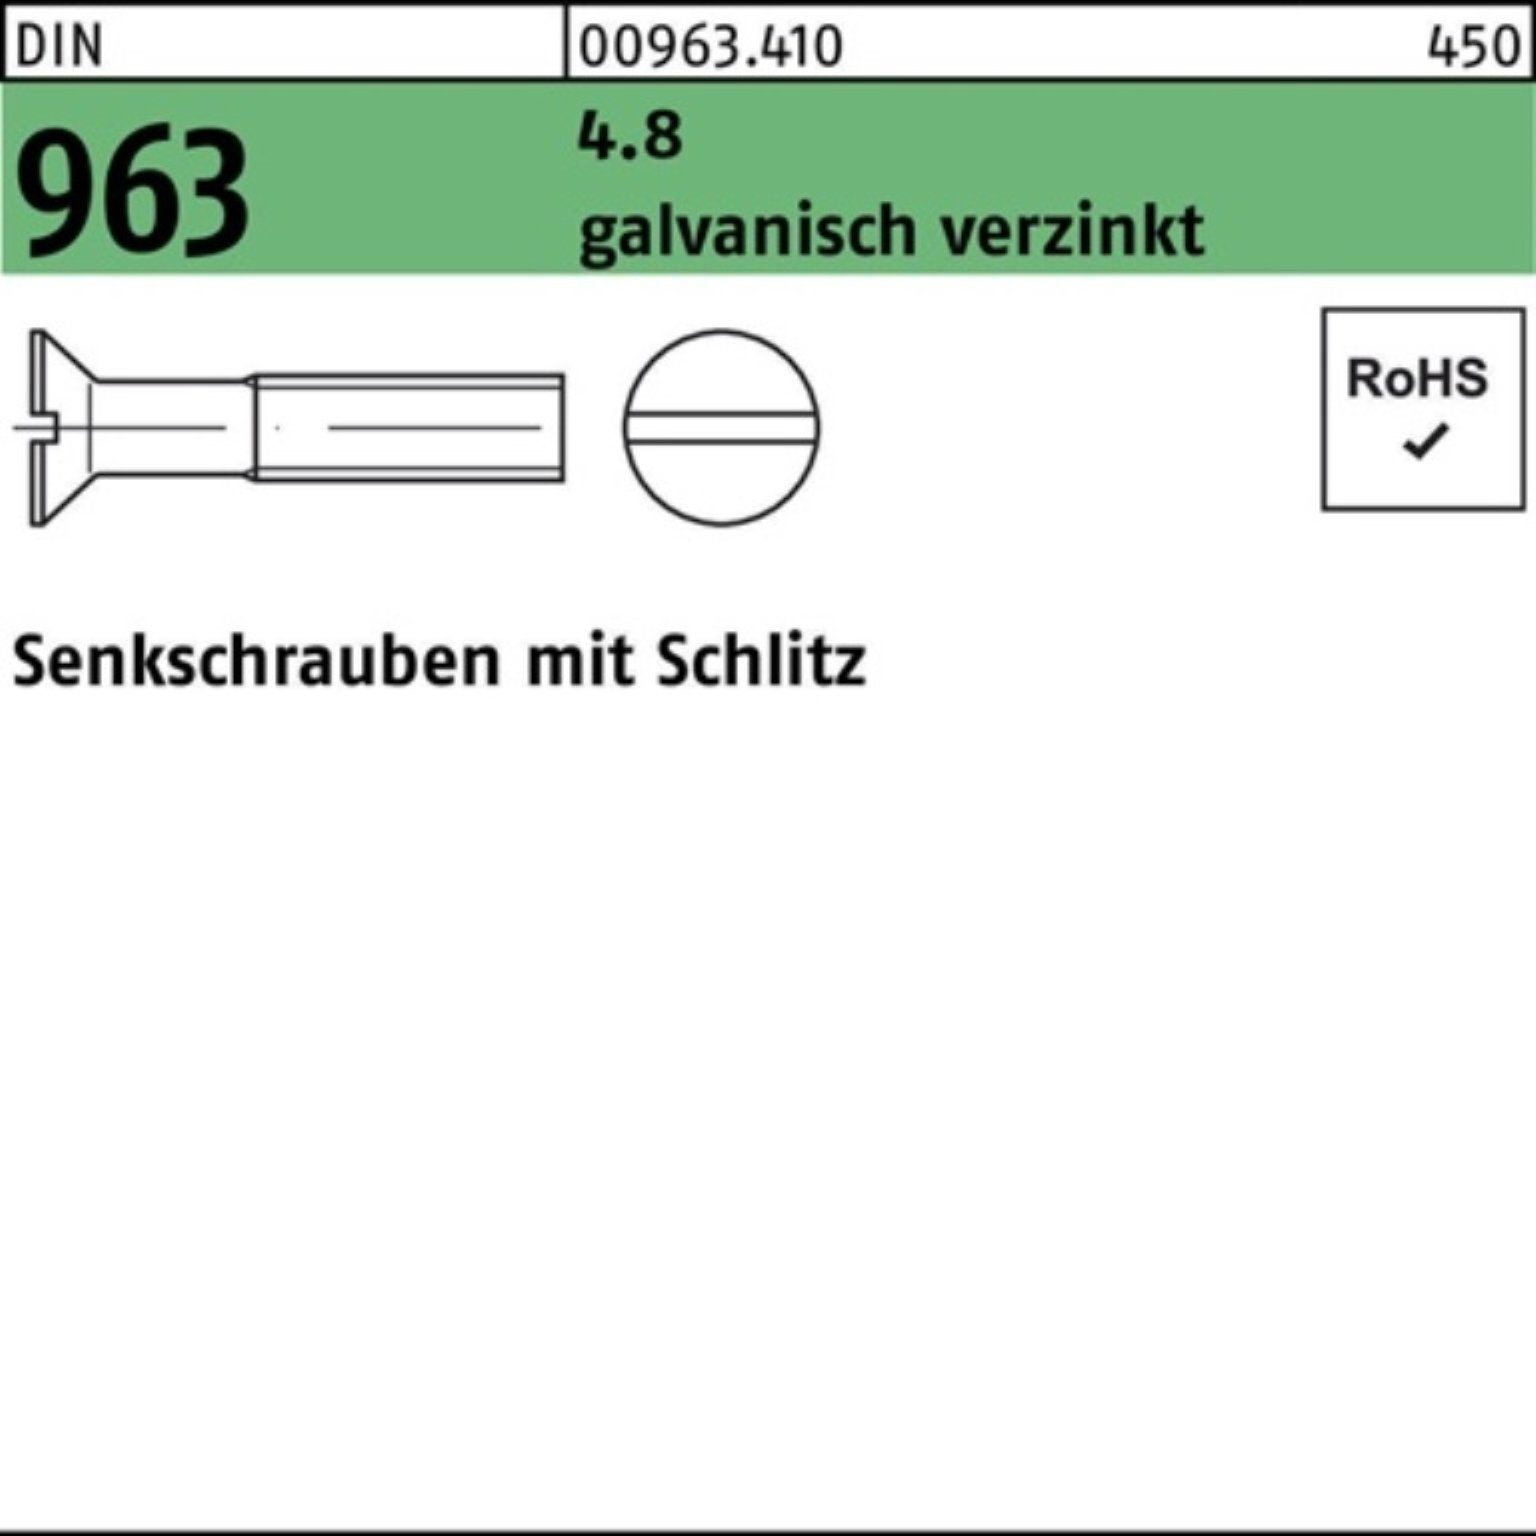 Reyher Senkschraube Pack 2000er 4.8 St 16 2000 Schlitz DIN Senkschraube galv.verz. 963 M4x